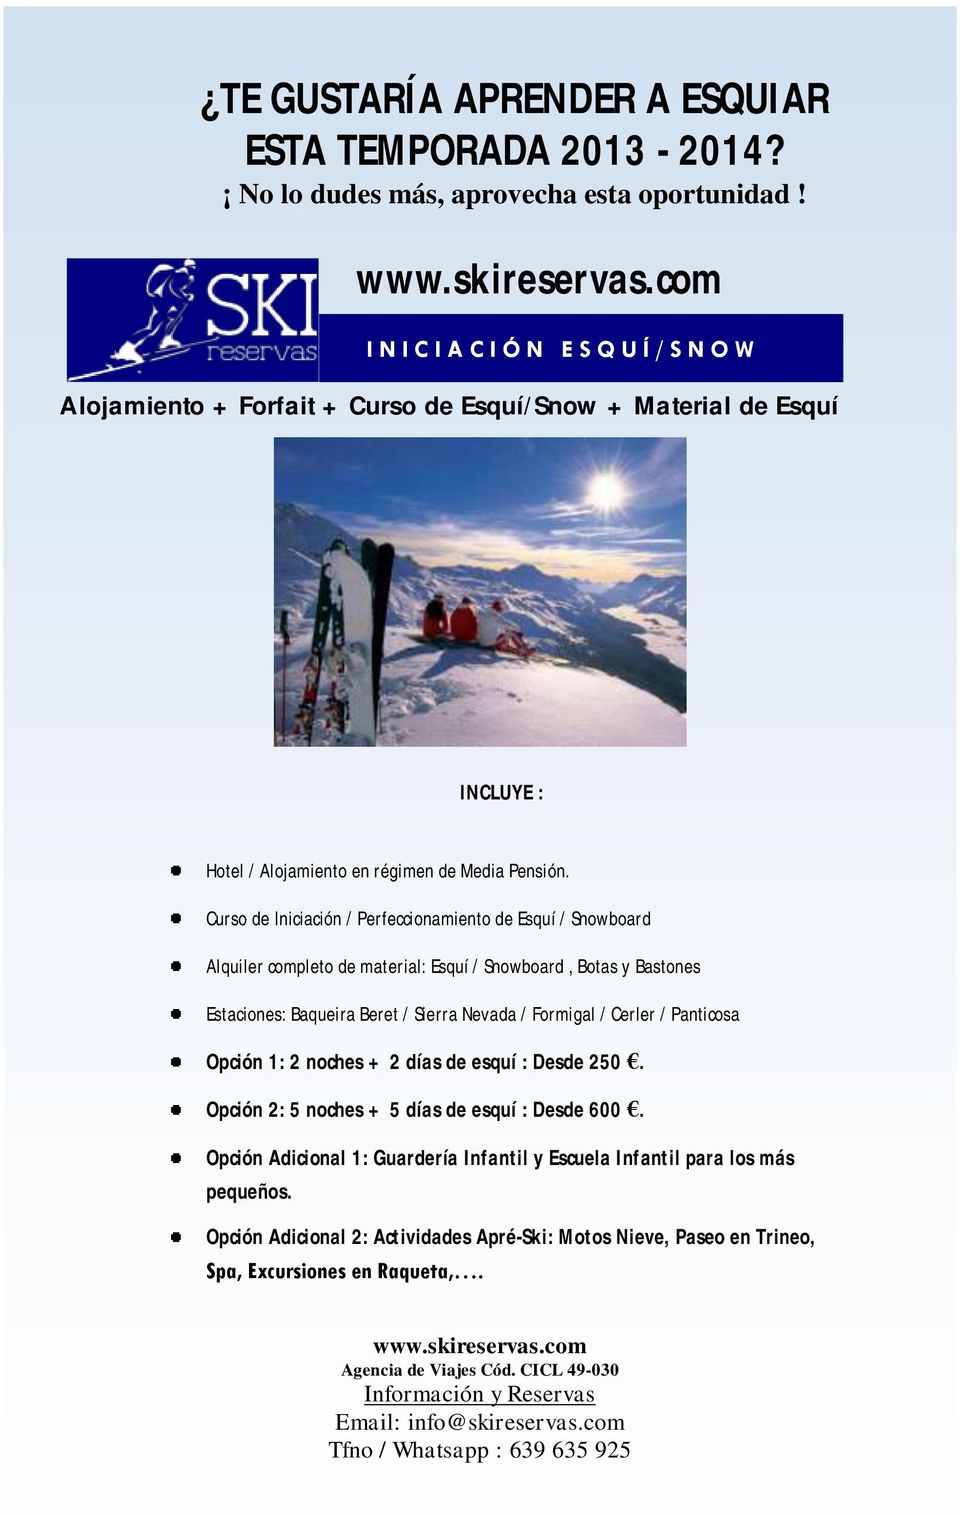 Curso de Iniciación / Perfeccionamiento de Esquí / Snowboard Alquiler completo de material: Esquí / Snowboard, Botas y Bastones Estaciones: Baqueira Beret / Sierra Nevada / Formigal /